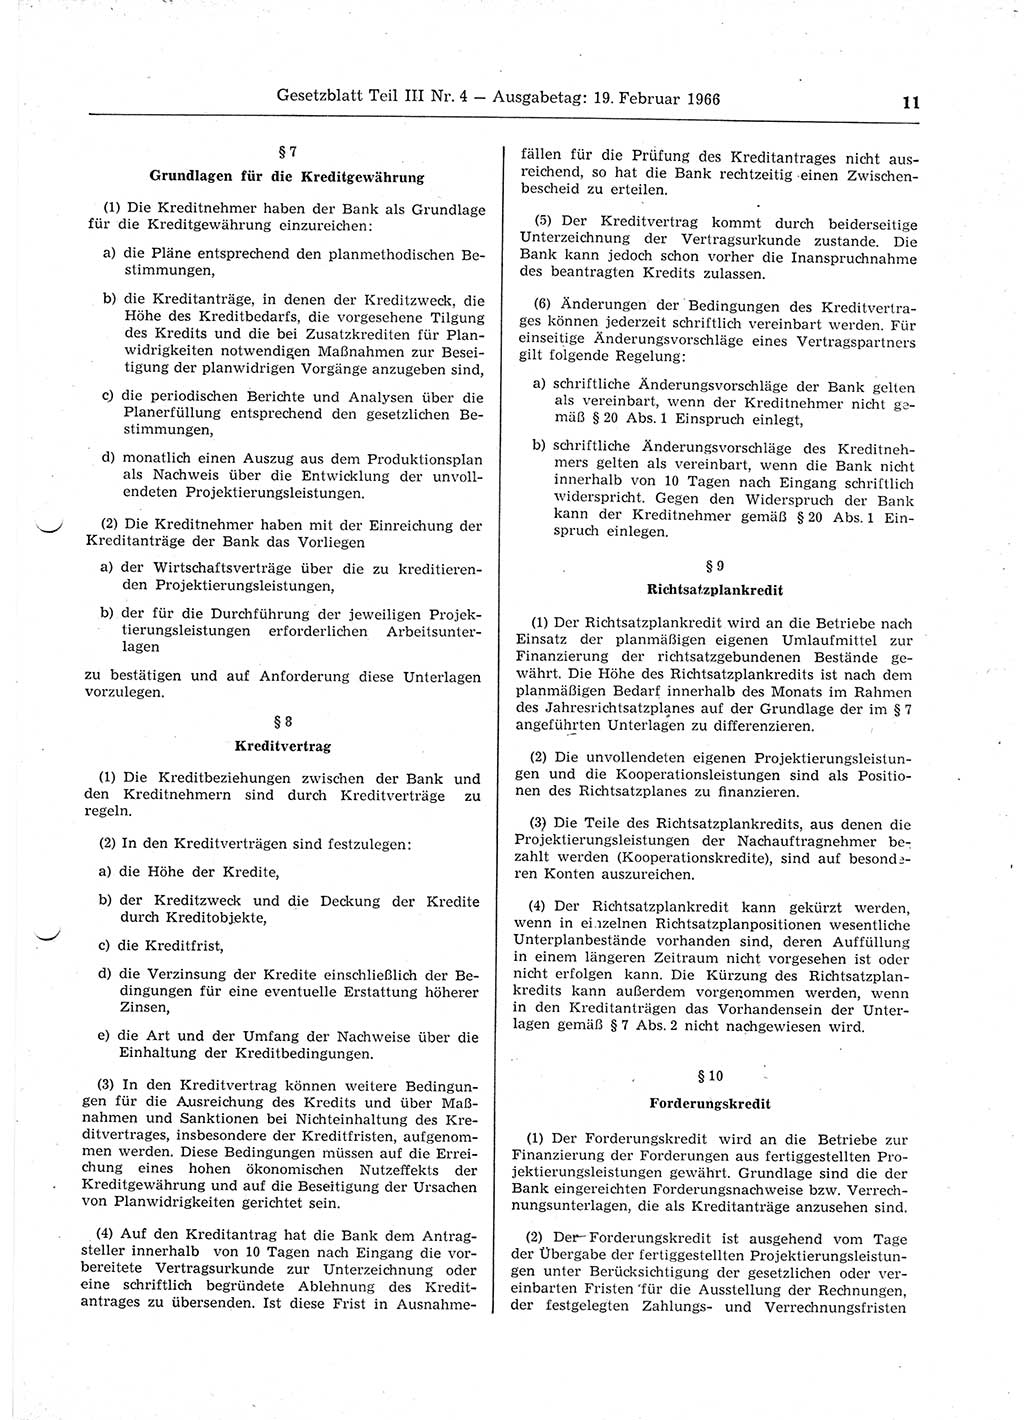 Gesetzblatt (GBl.) der Deutschen Demokratischen Republik (DDR) Teil ⅠⅠⅠ 1966, Seite 11 (GBl. DDR ⅠⅠⅠ 1966, S. 11)